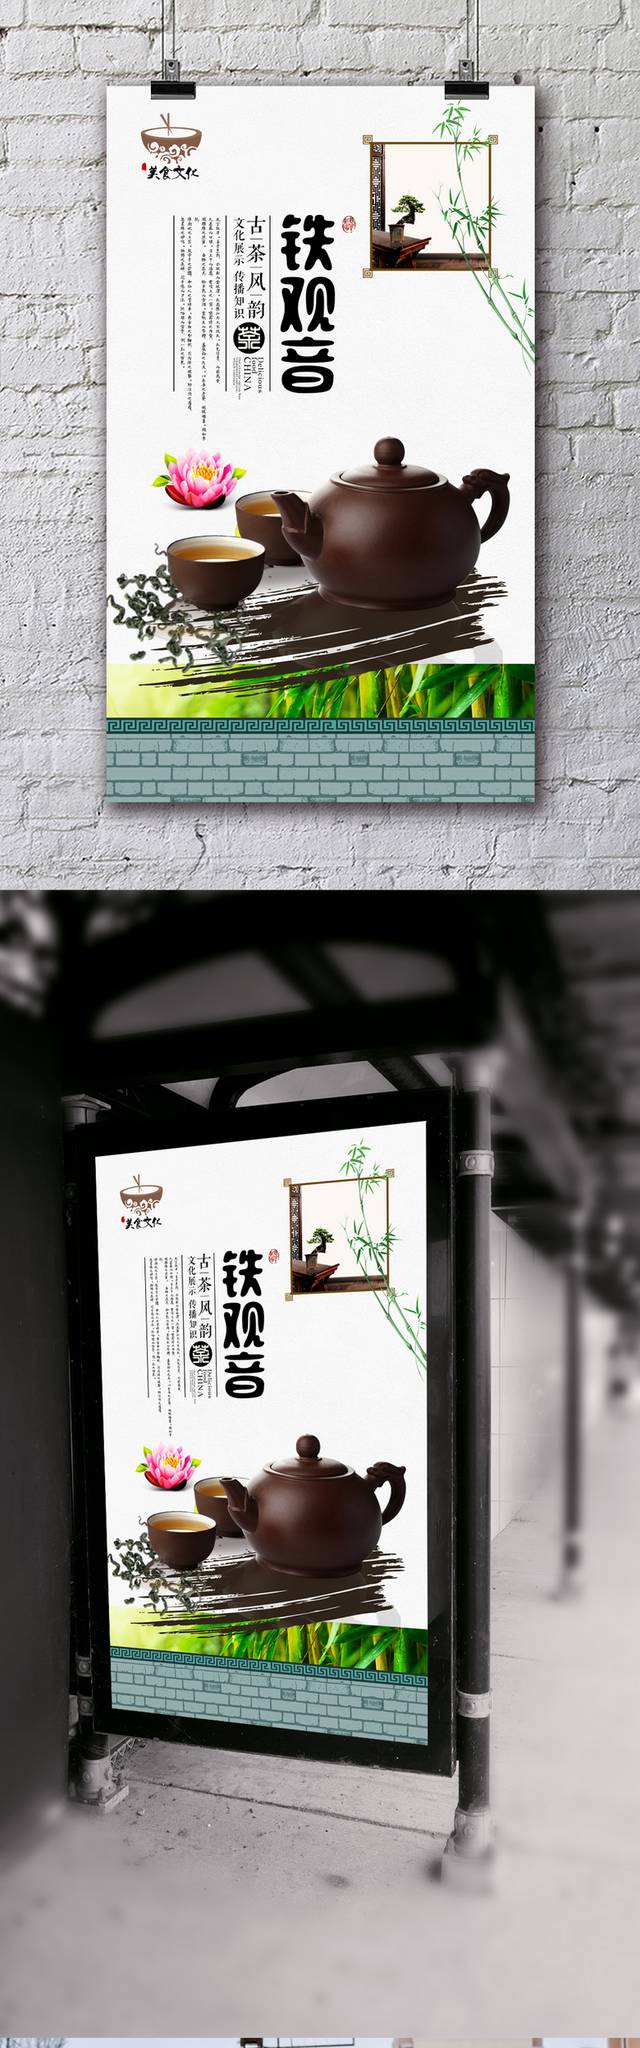 中国风高档铁观音宣传海报设计